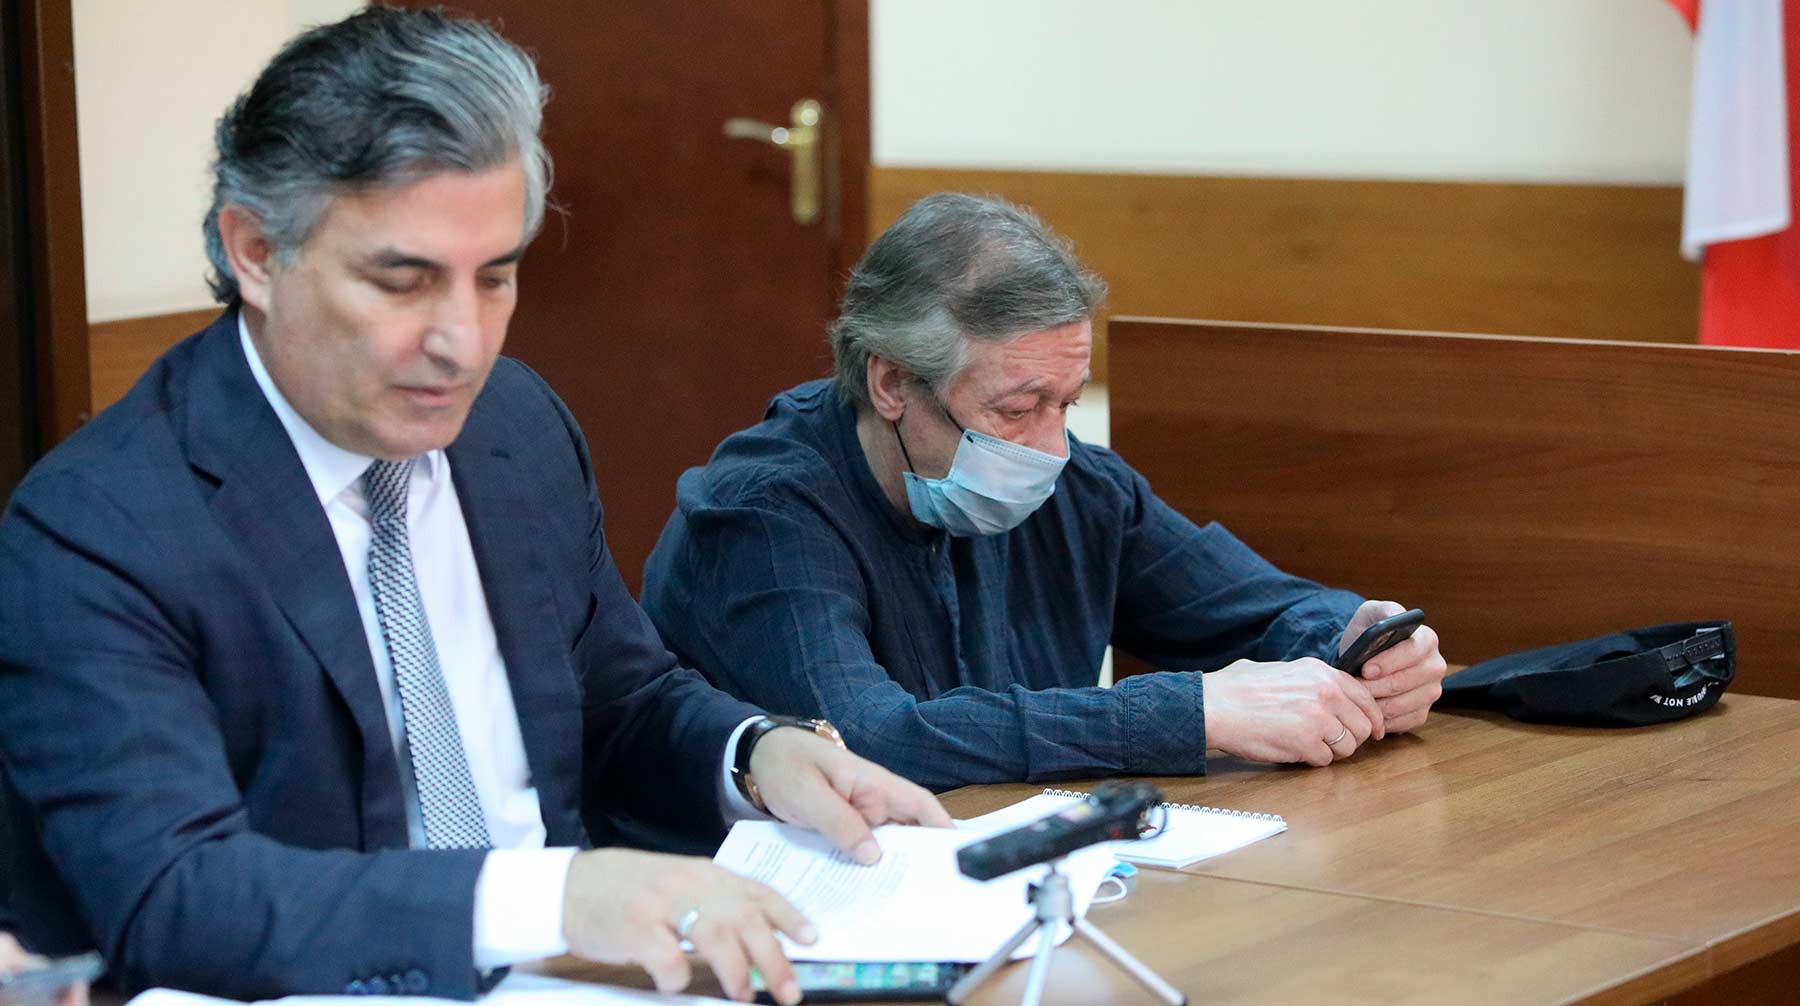 Адвокат Эльман Пашаев и актер Михаил Ефремов в Пресненском суде